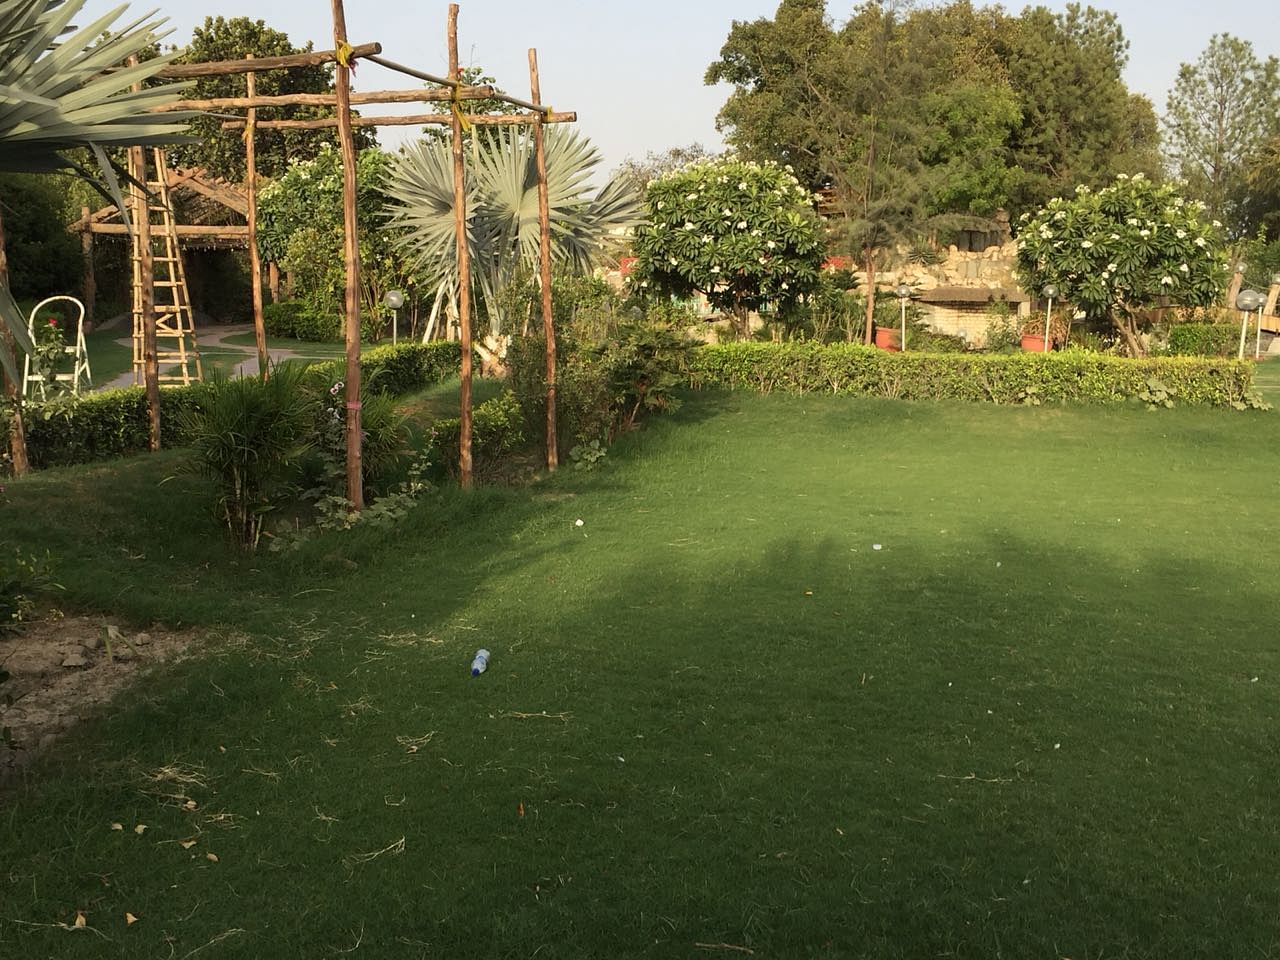 Duke Farms in Alipur, Delhi